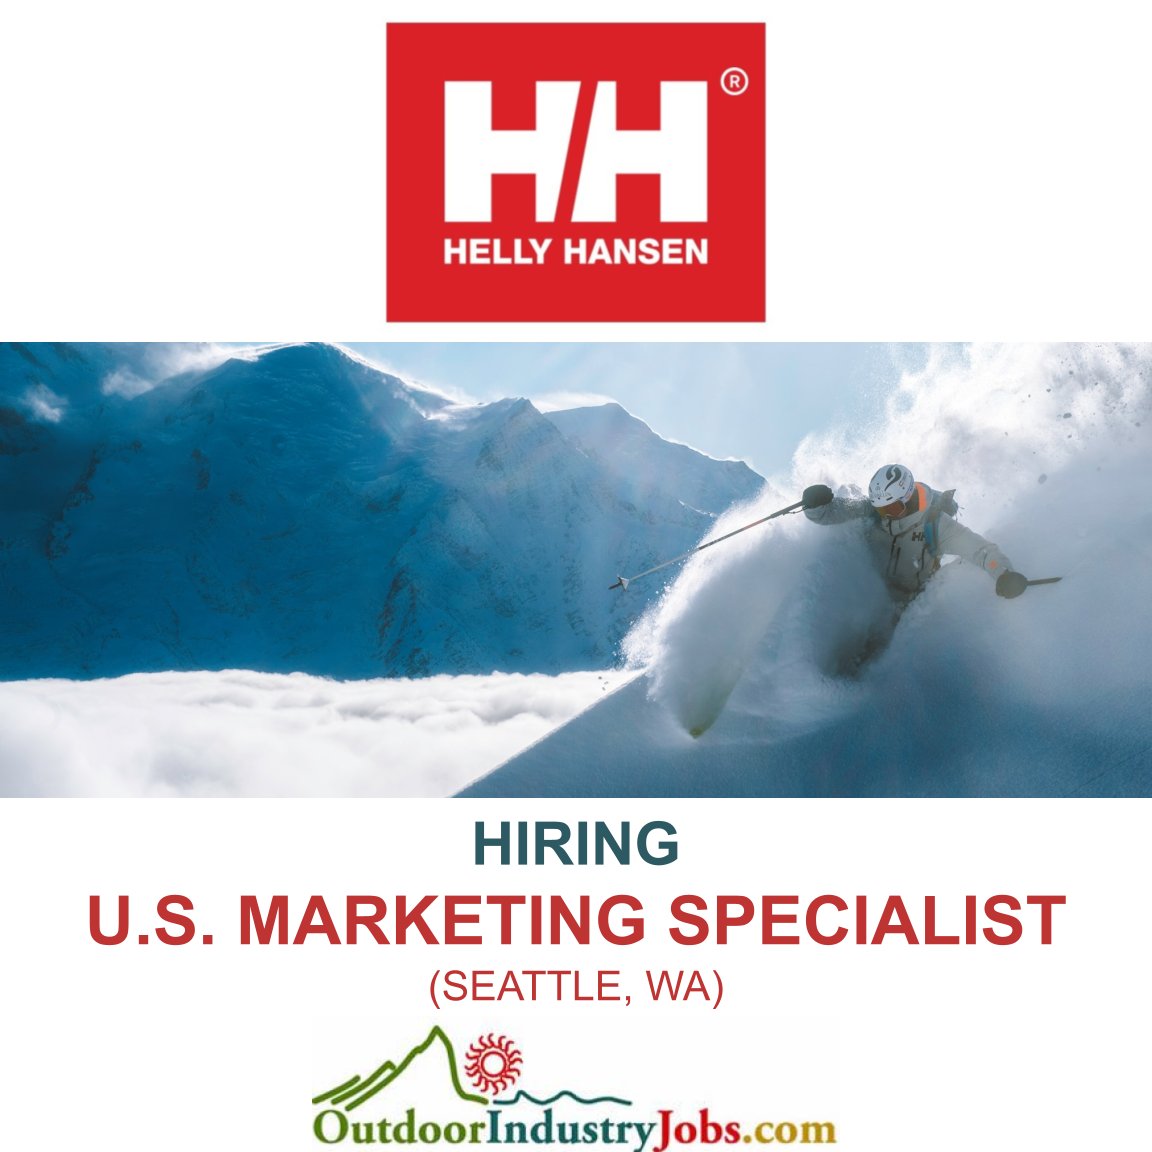 Apply Here: outdoorindustryjobs.com/JobDetail/GetJ…

#outdoorindustryjobs #hellyhansen #skilife #skilifestyle #skijobs #skipow #skipowder #ski #marketing #hiringmarketing #marketingjobs #marketingcareer #marketinglife
@HellyHansen